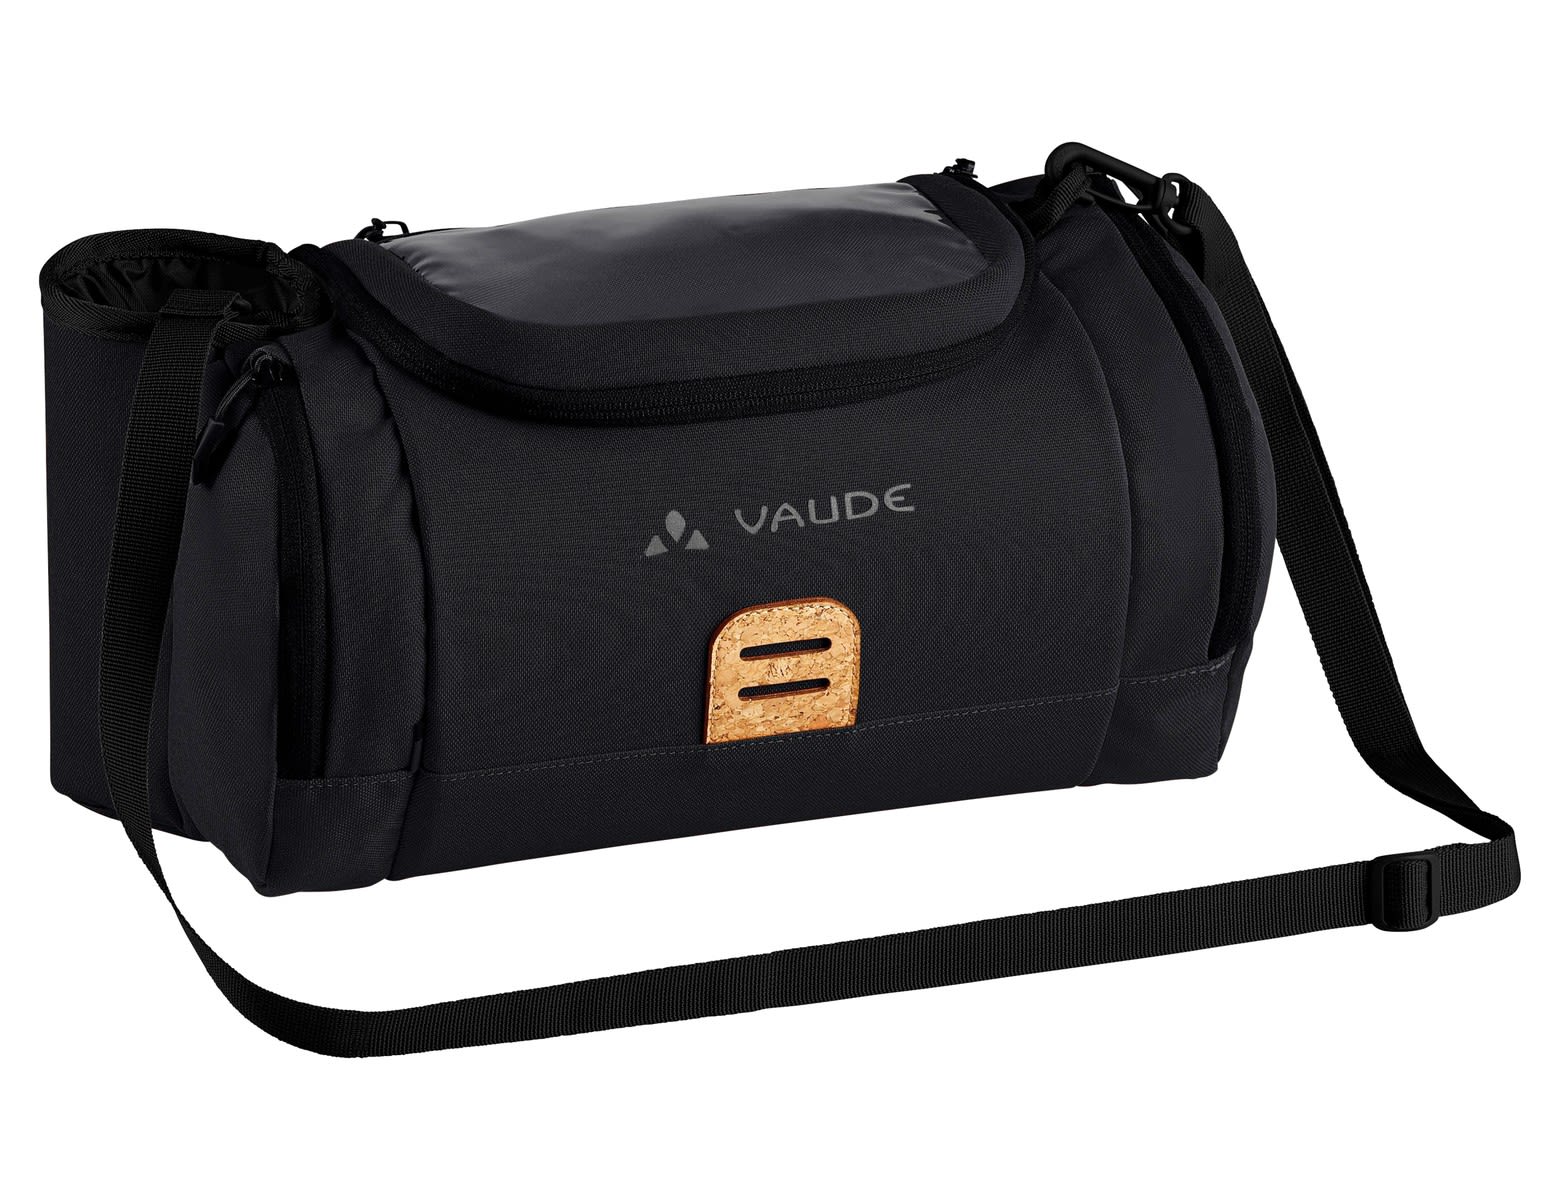 Vaude Ebox Schwarz- Taschen- Grsse 9l - Farbe Black unter Vaude